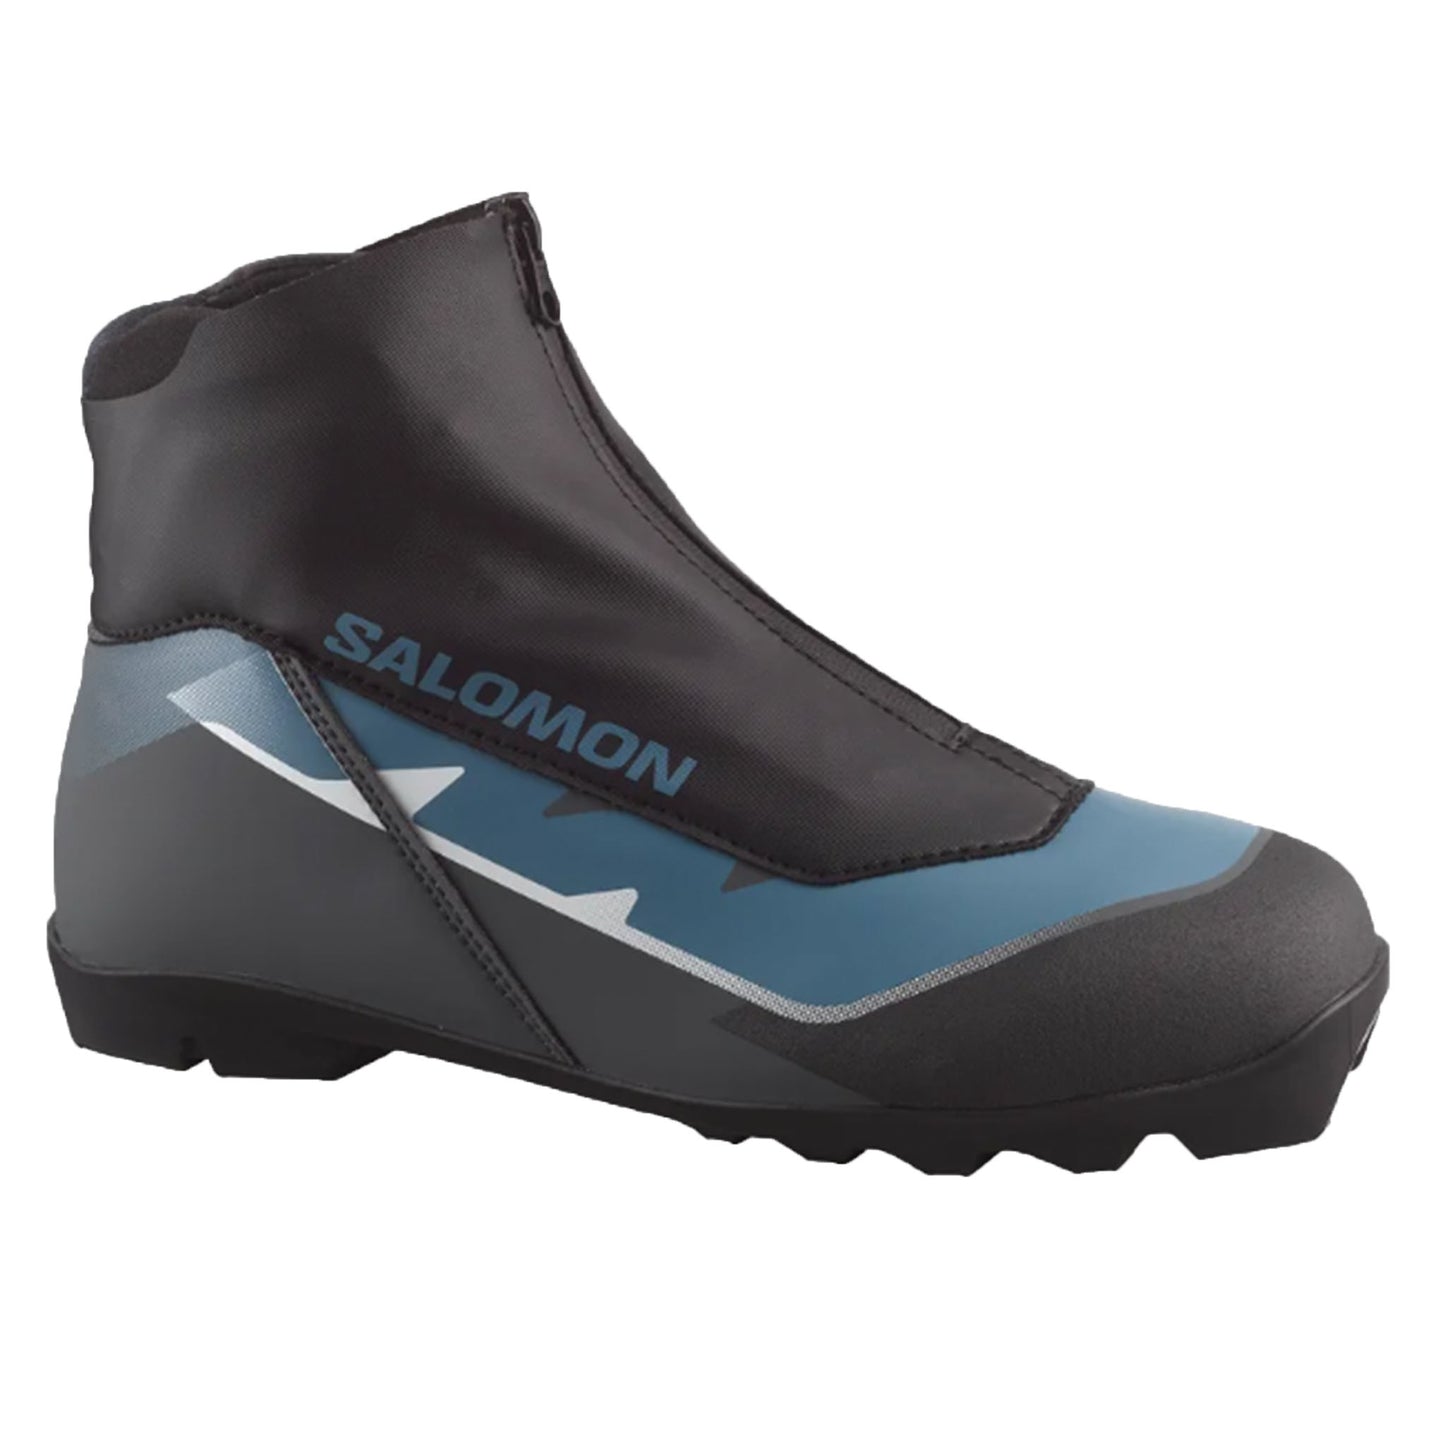 Salomon Escape Nordic Ski Boots